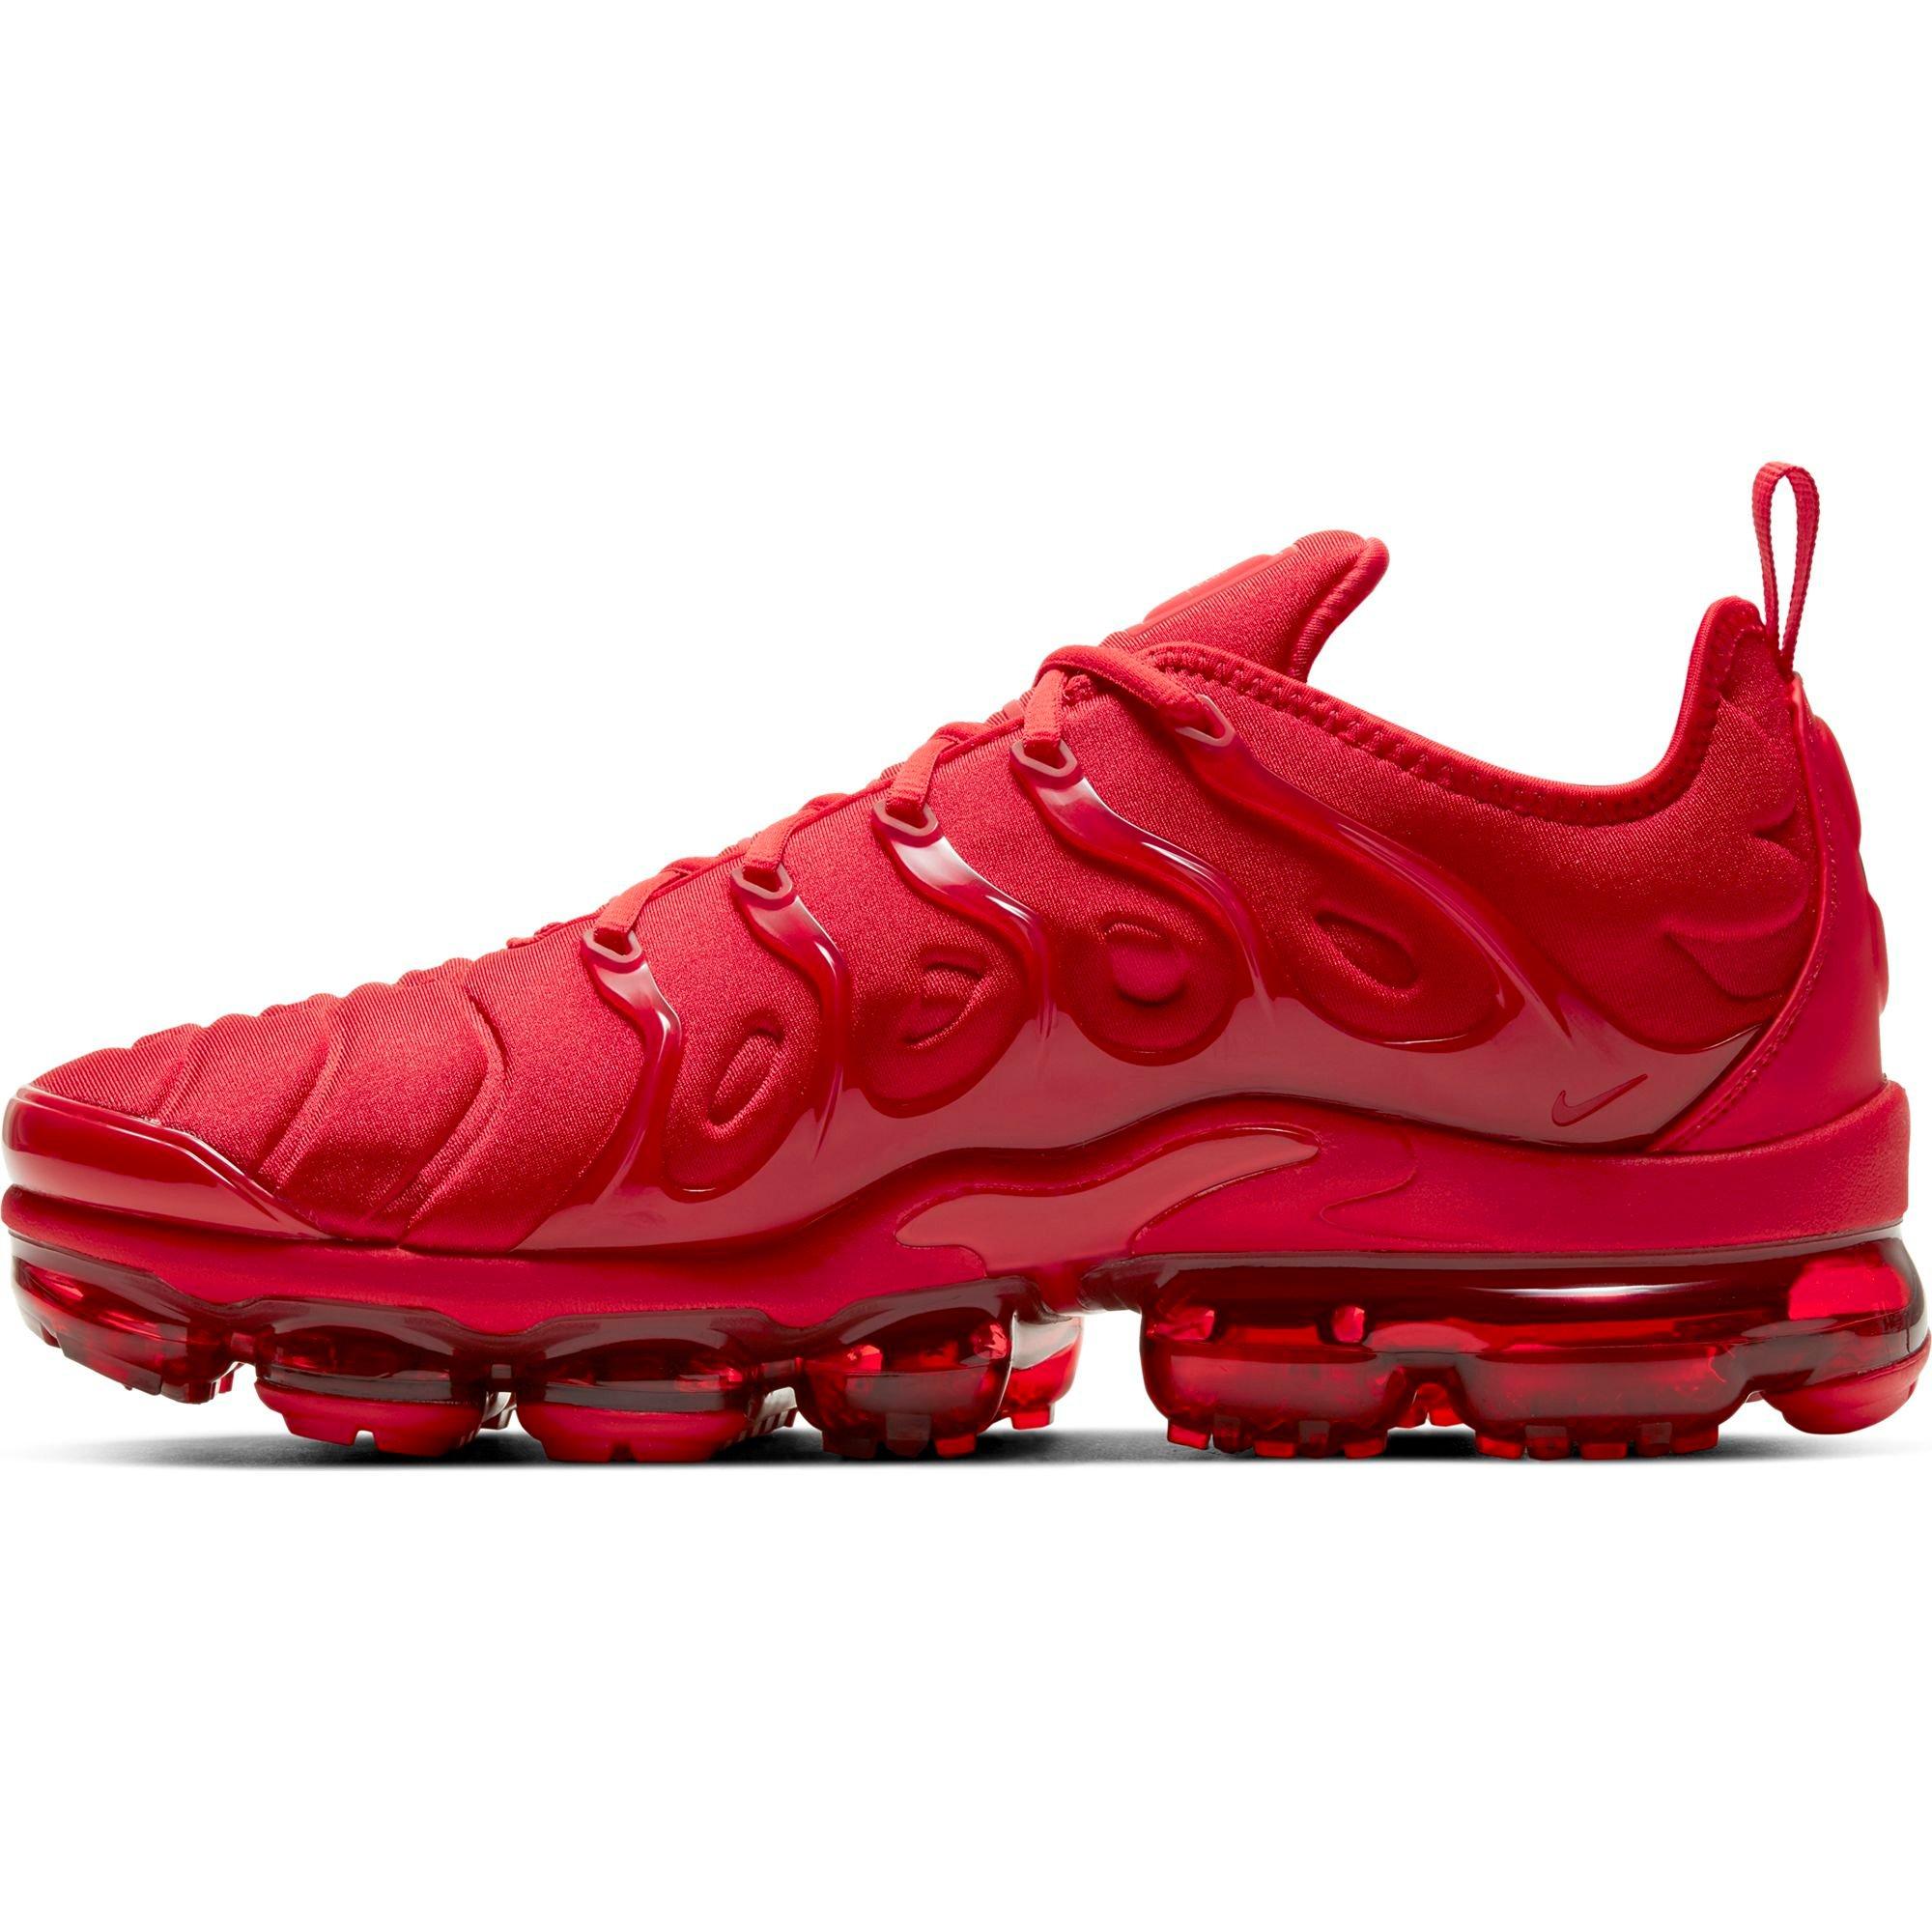 draad Simuleren stijfheid Nike VaporMax Plus "Red" Men's Shoe